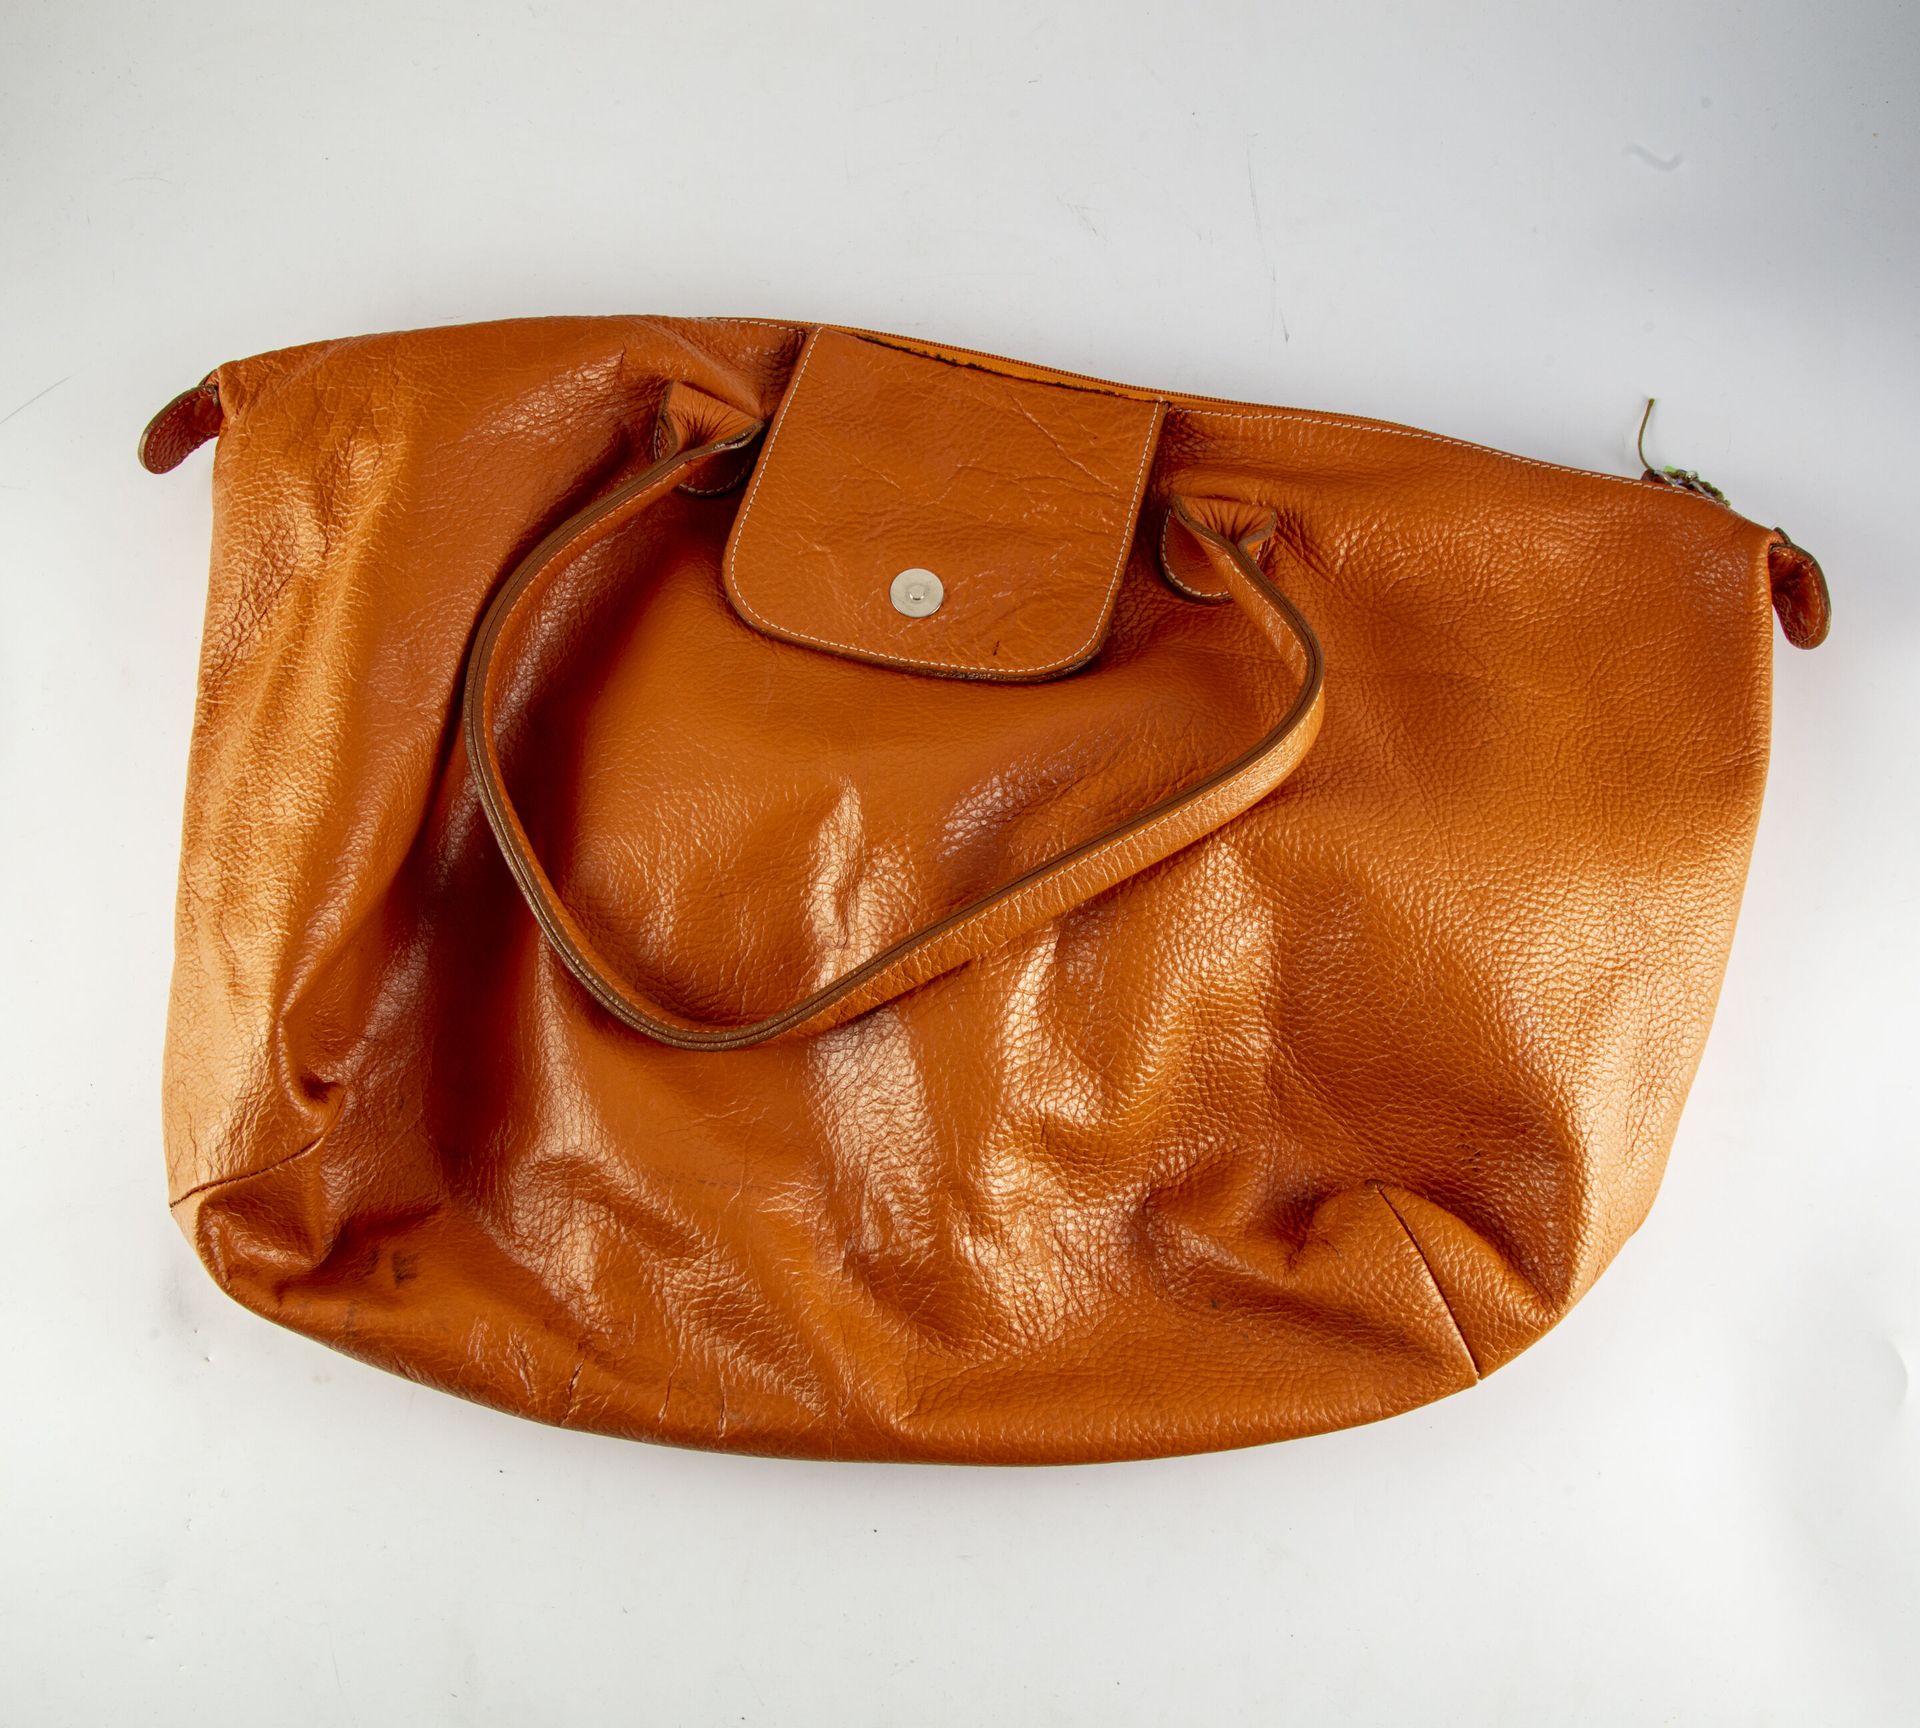 Null 橙色皮革小旅行袋
长：41厘米 
少量磨损和撕裂